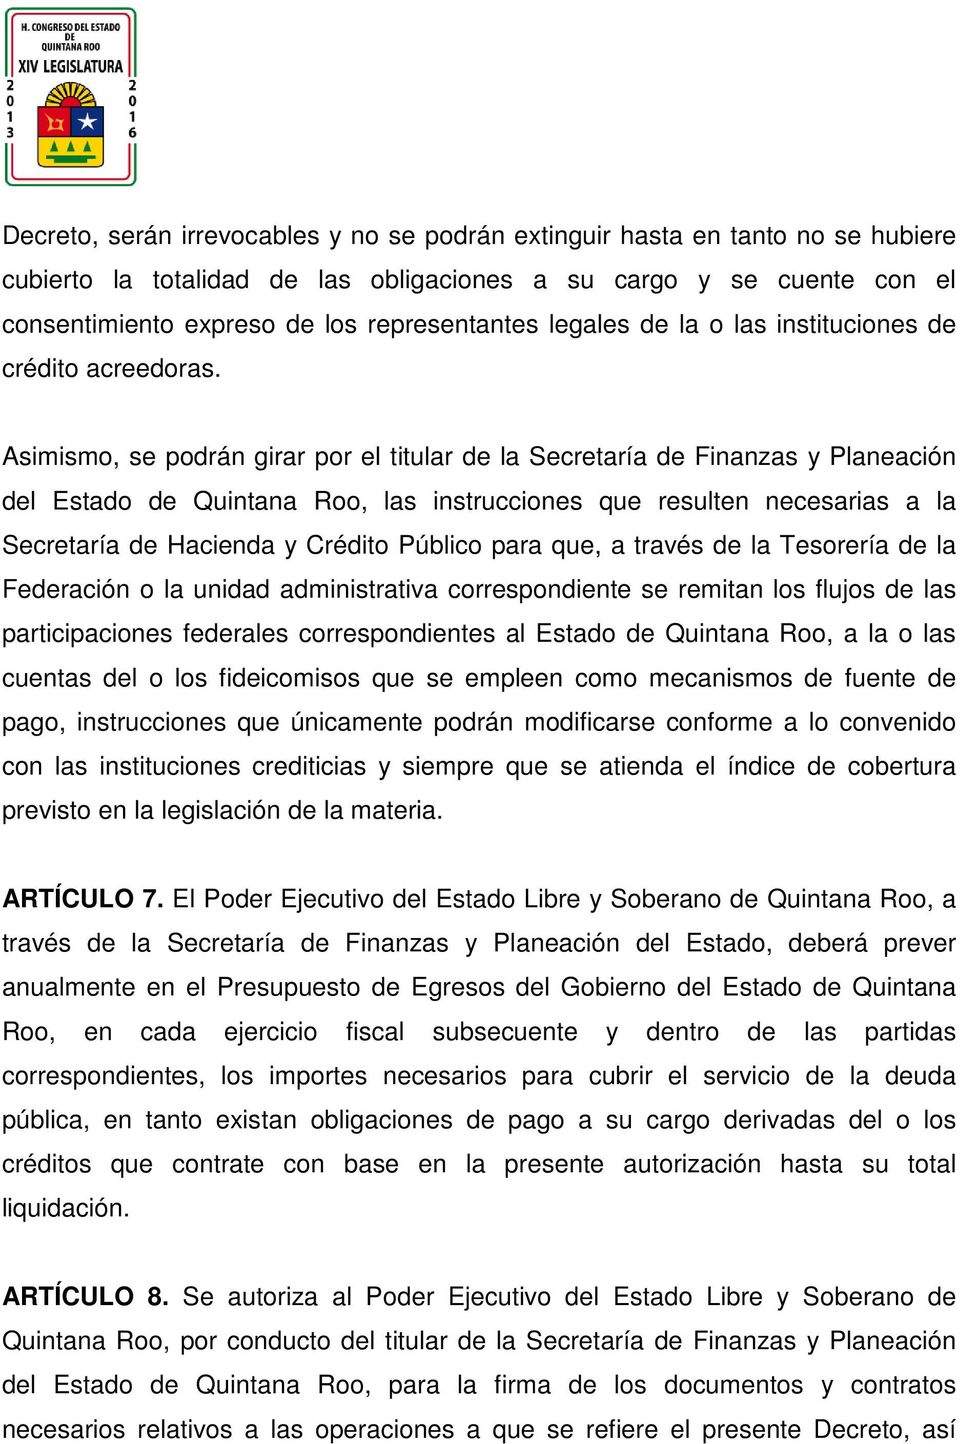 Asimismo, se podrán girar por el titular de la Secretaría de Finanzas y Planeación del Estado de Quintana Roo, las instrucciones que resulten necesarias a la Secretaría de Hacienda y Crédito Público